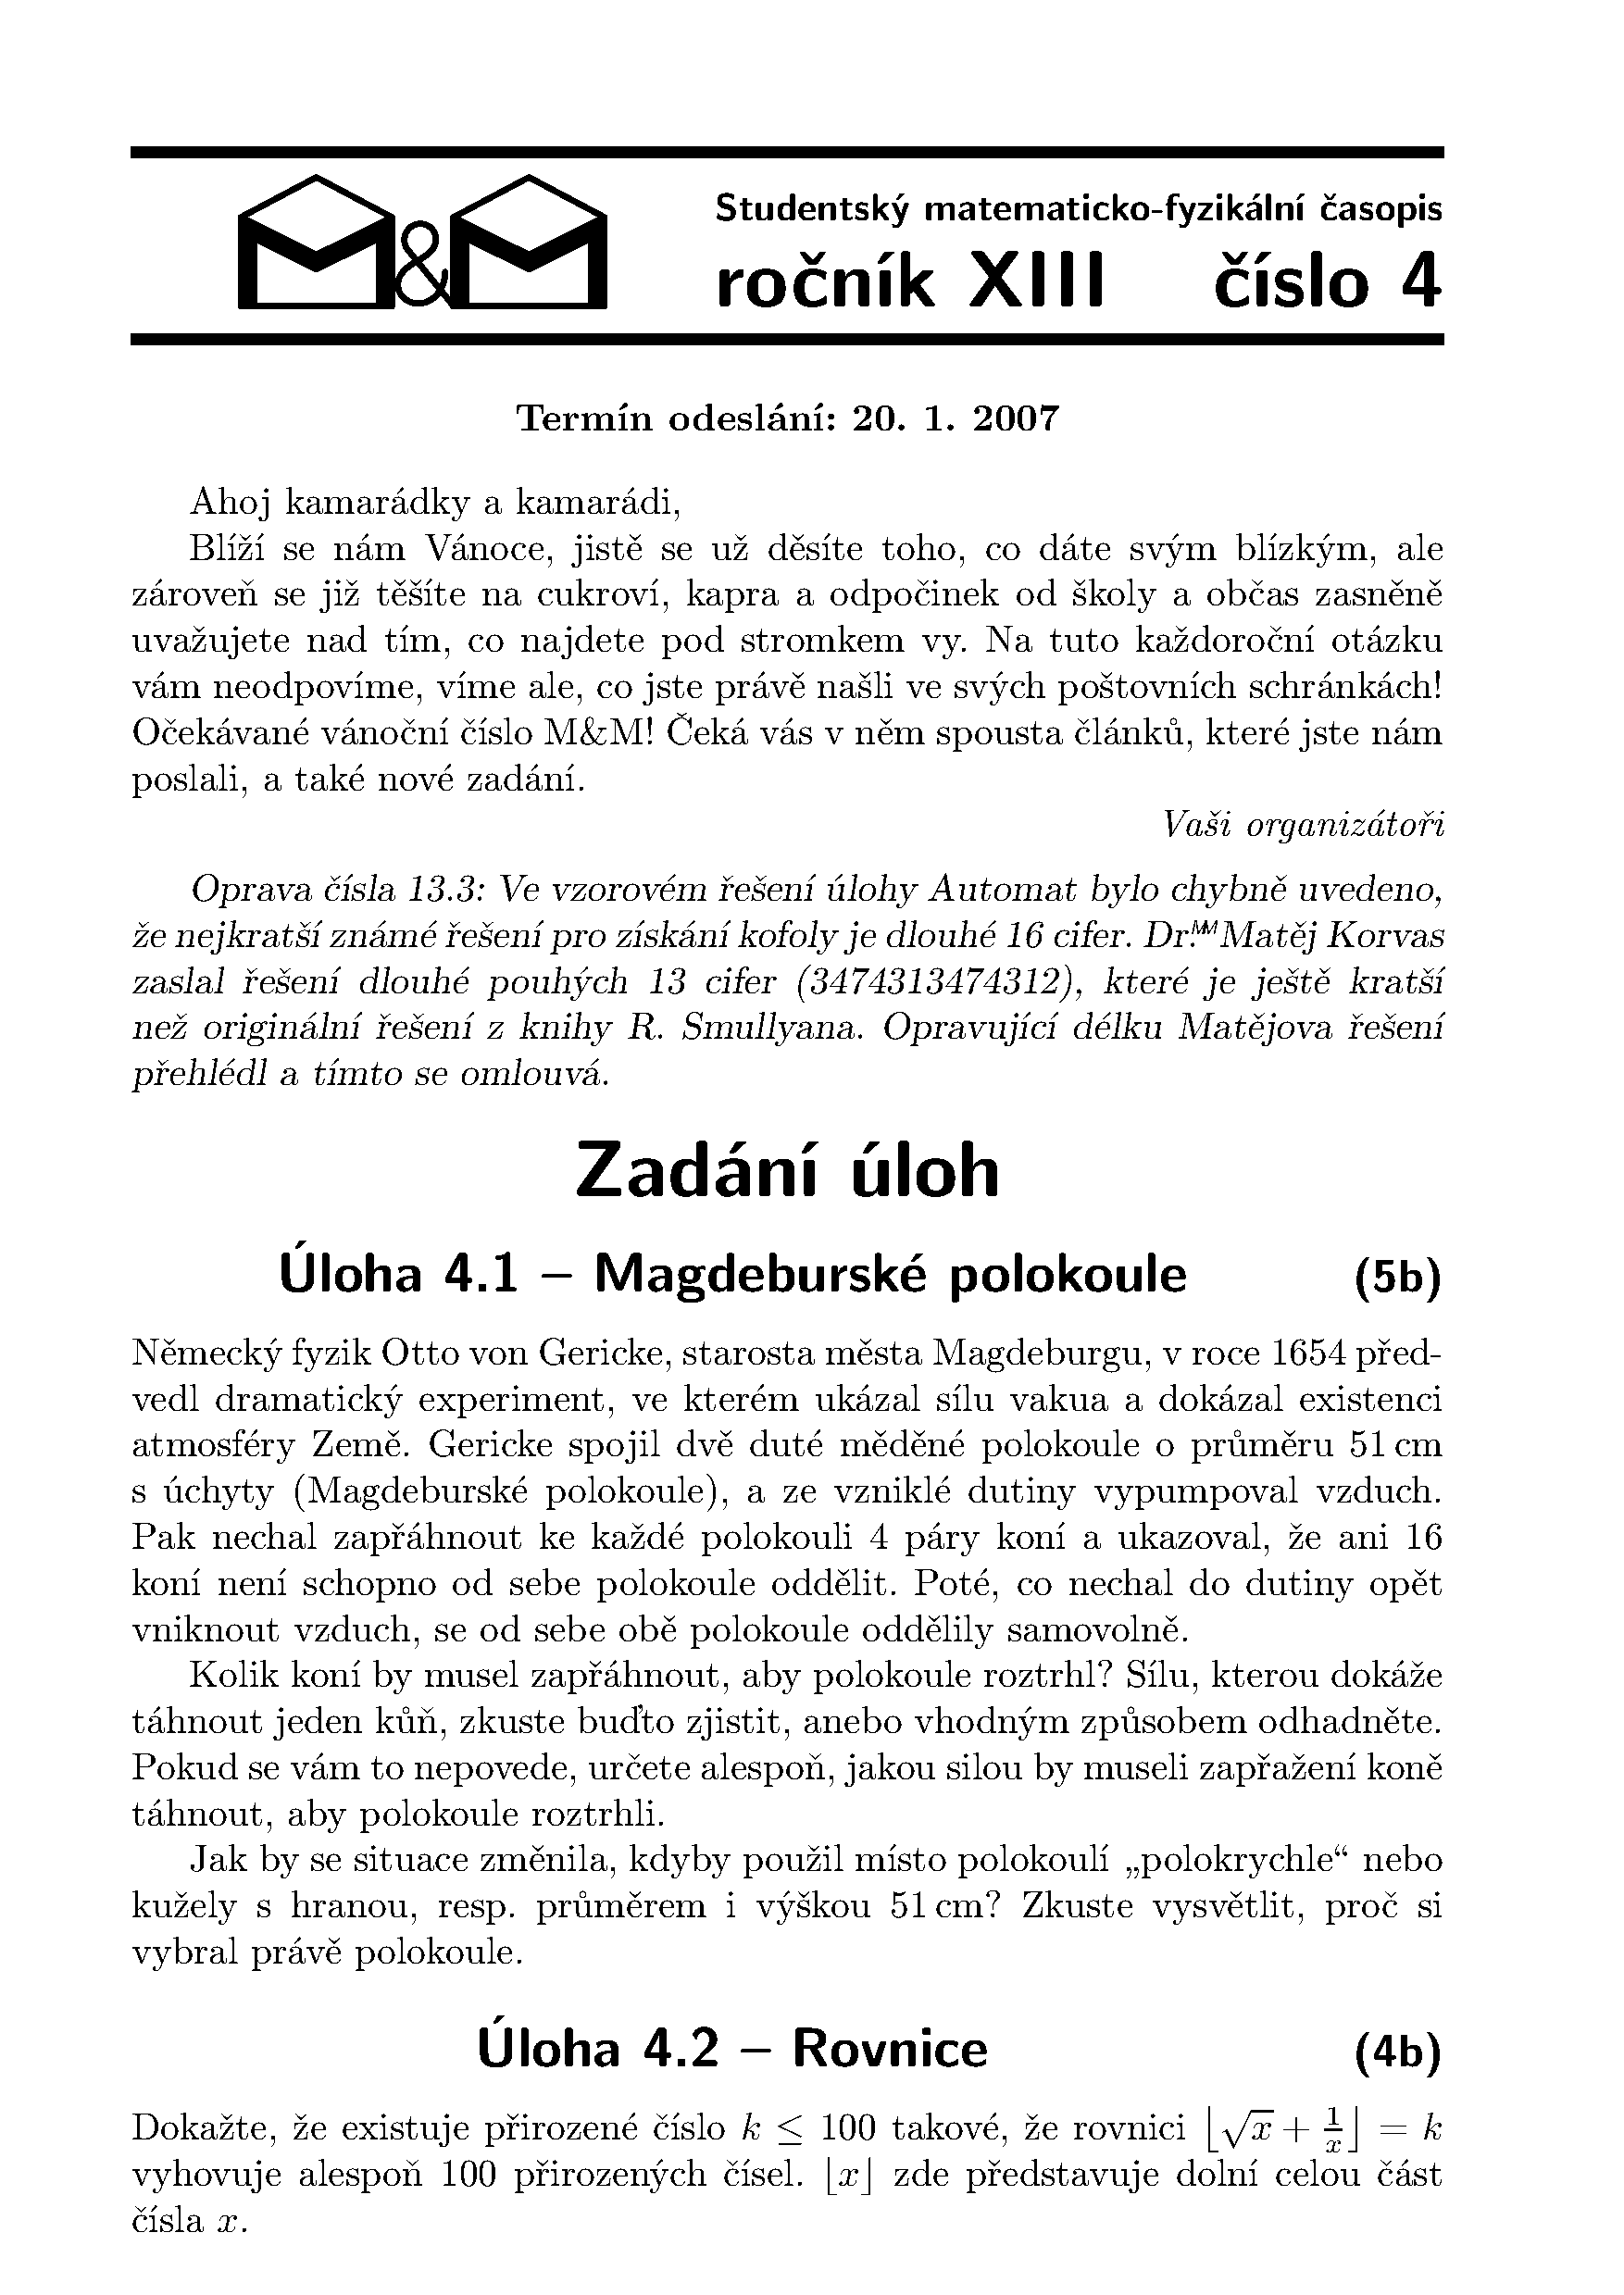 Titulní strana 4. čísla